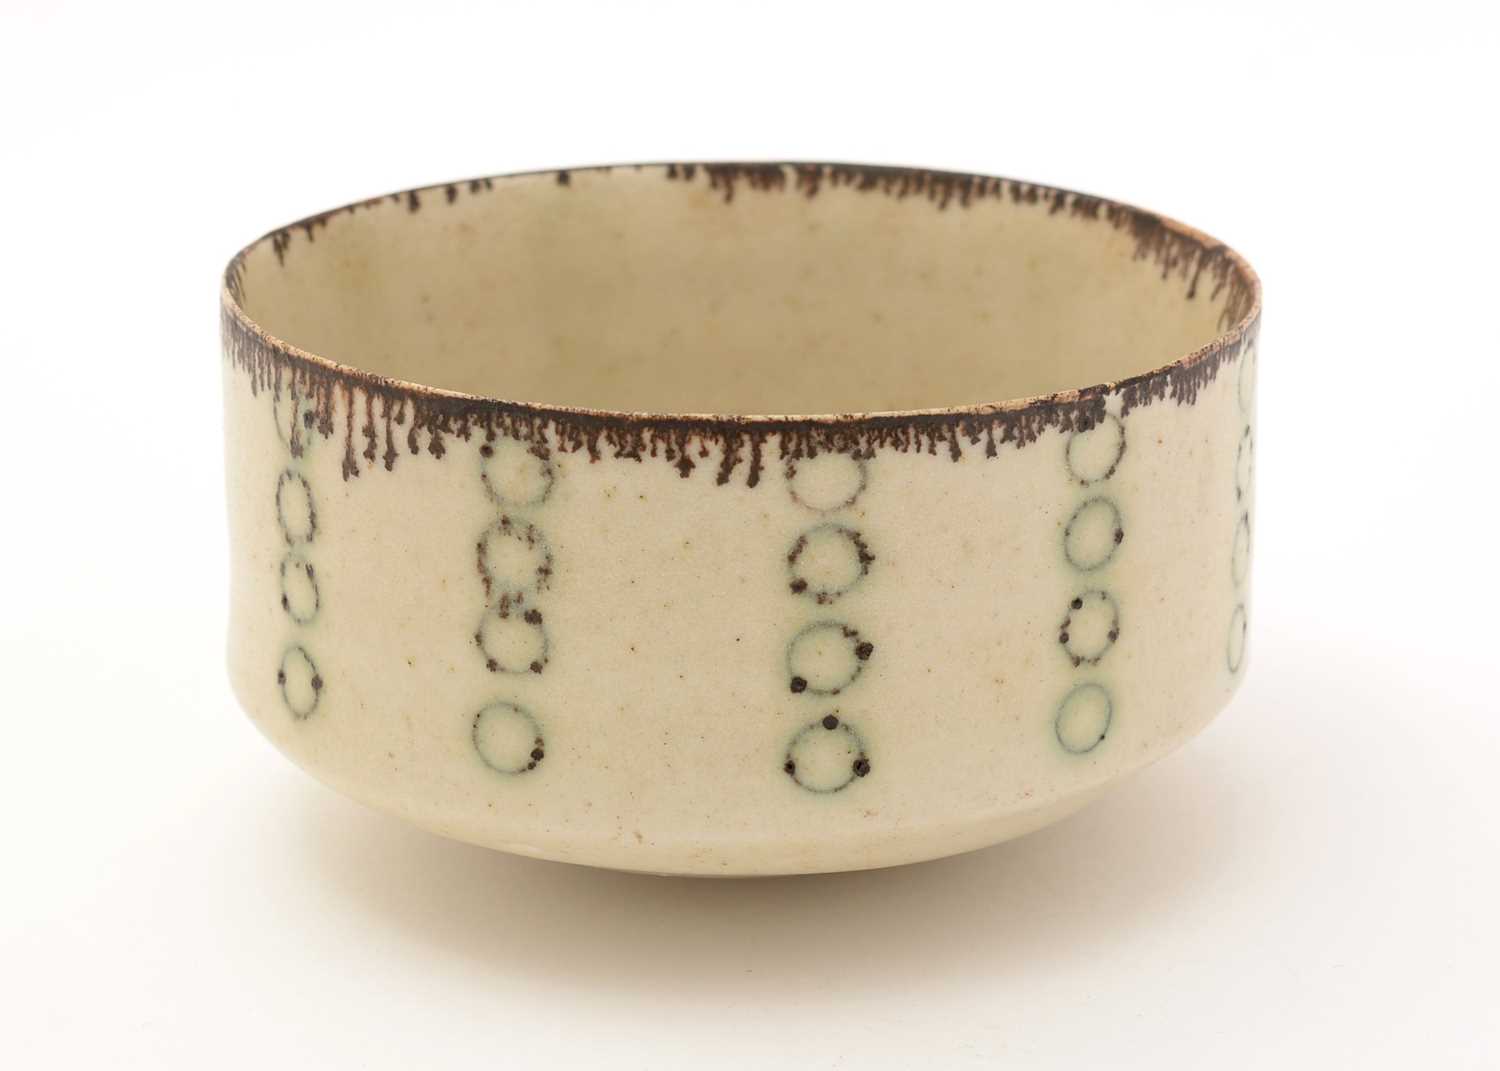 417 - Lucie Rie porcelain bowl